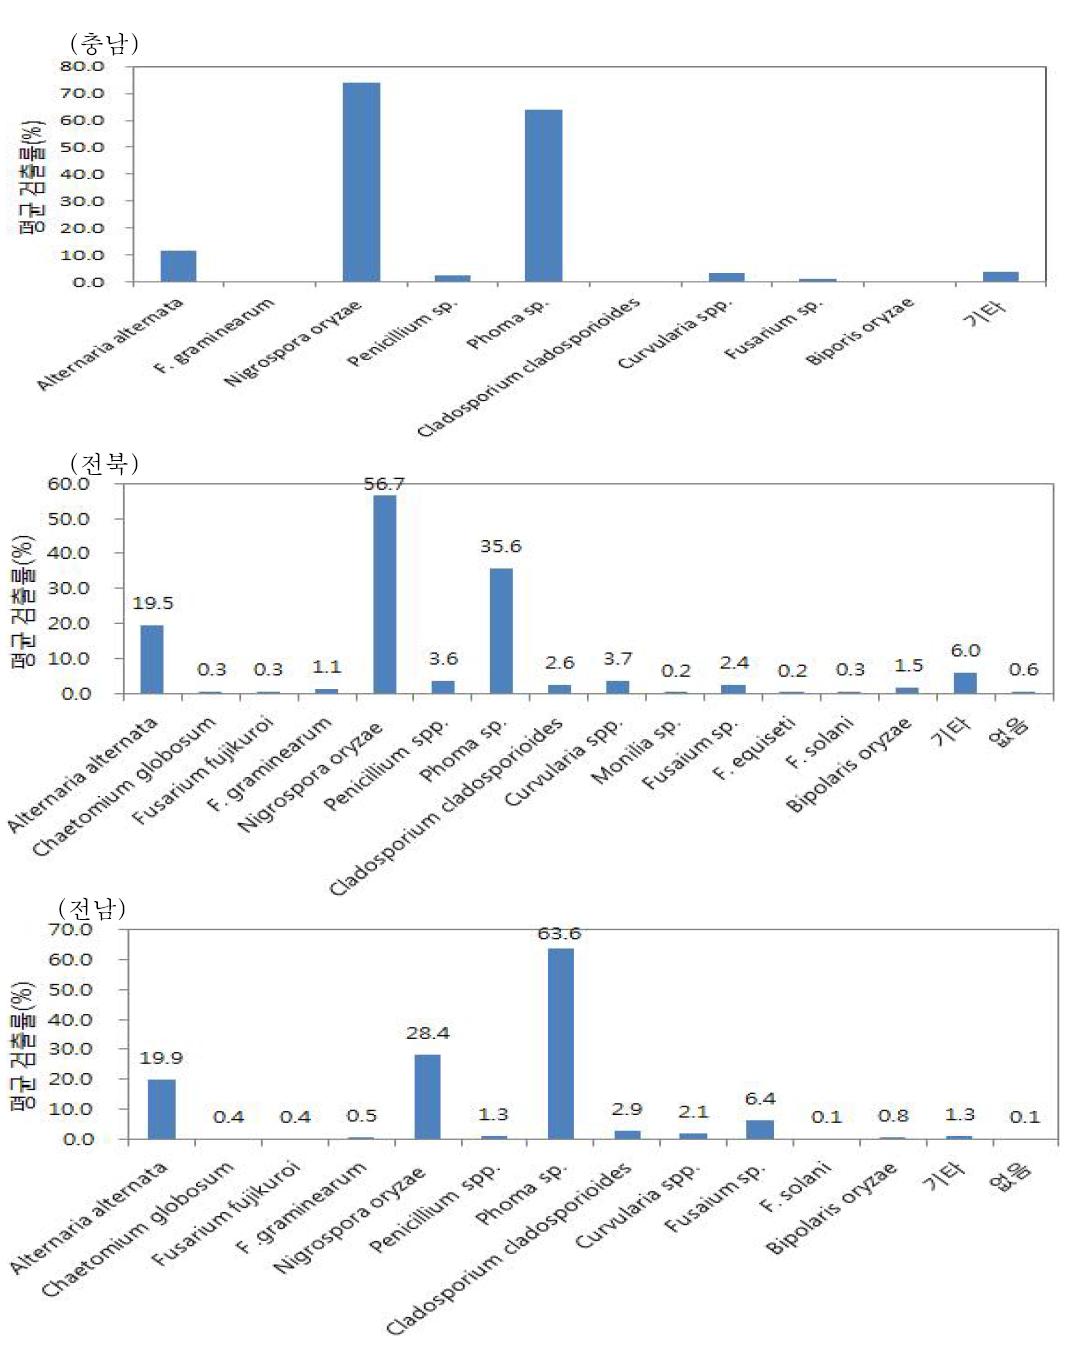 2013년도 전남북, 충남지역의 농가 재배포장에서 수집한 종자 중 병원균 검출률